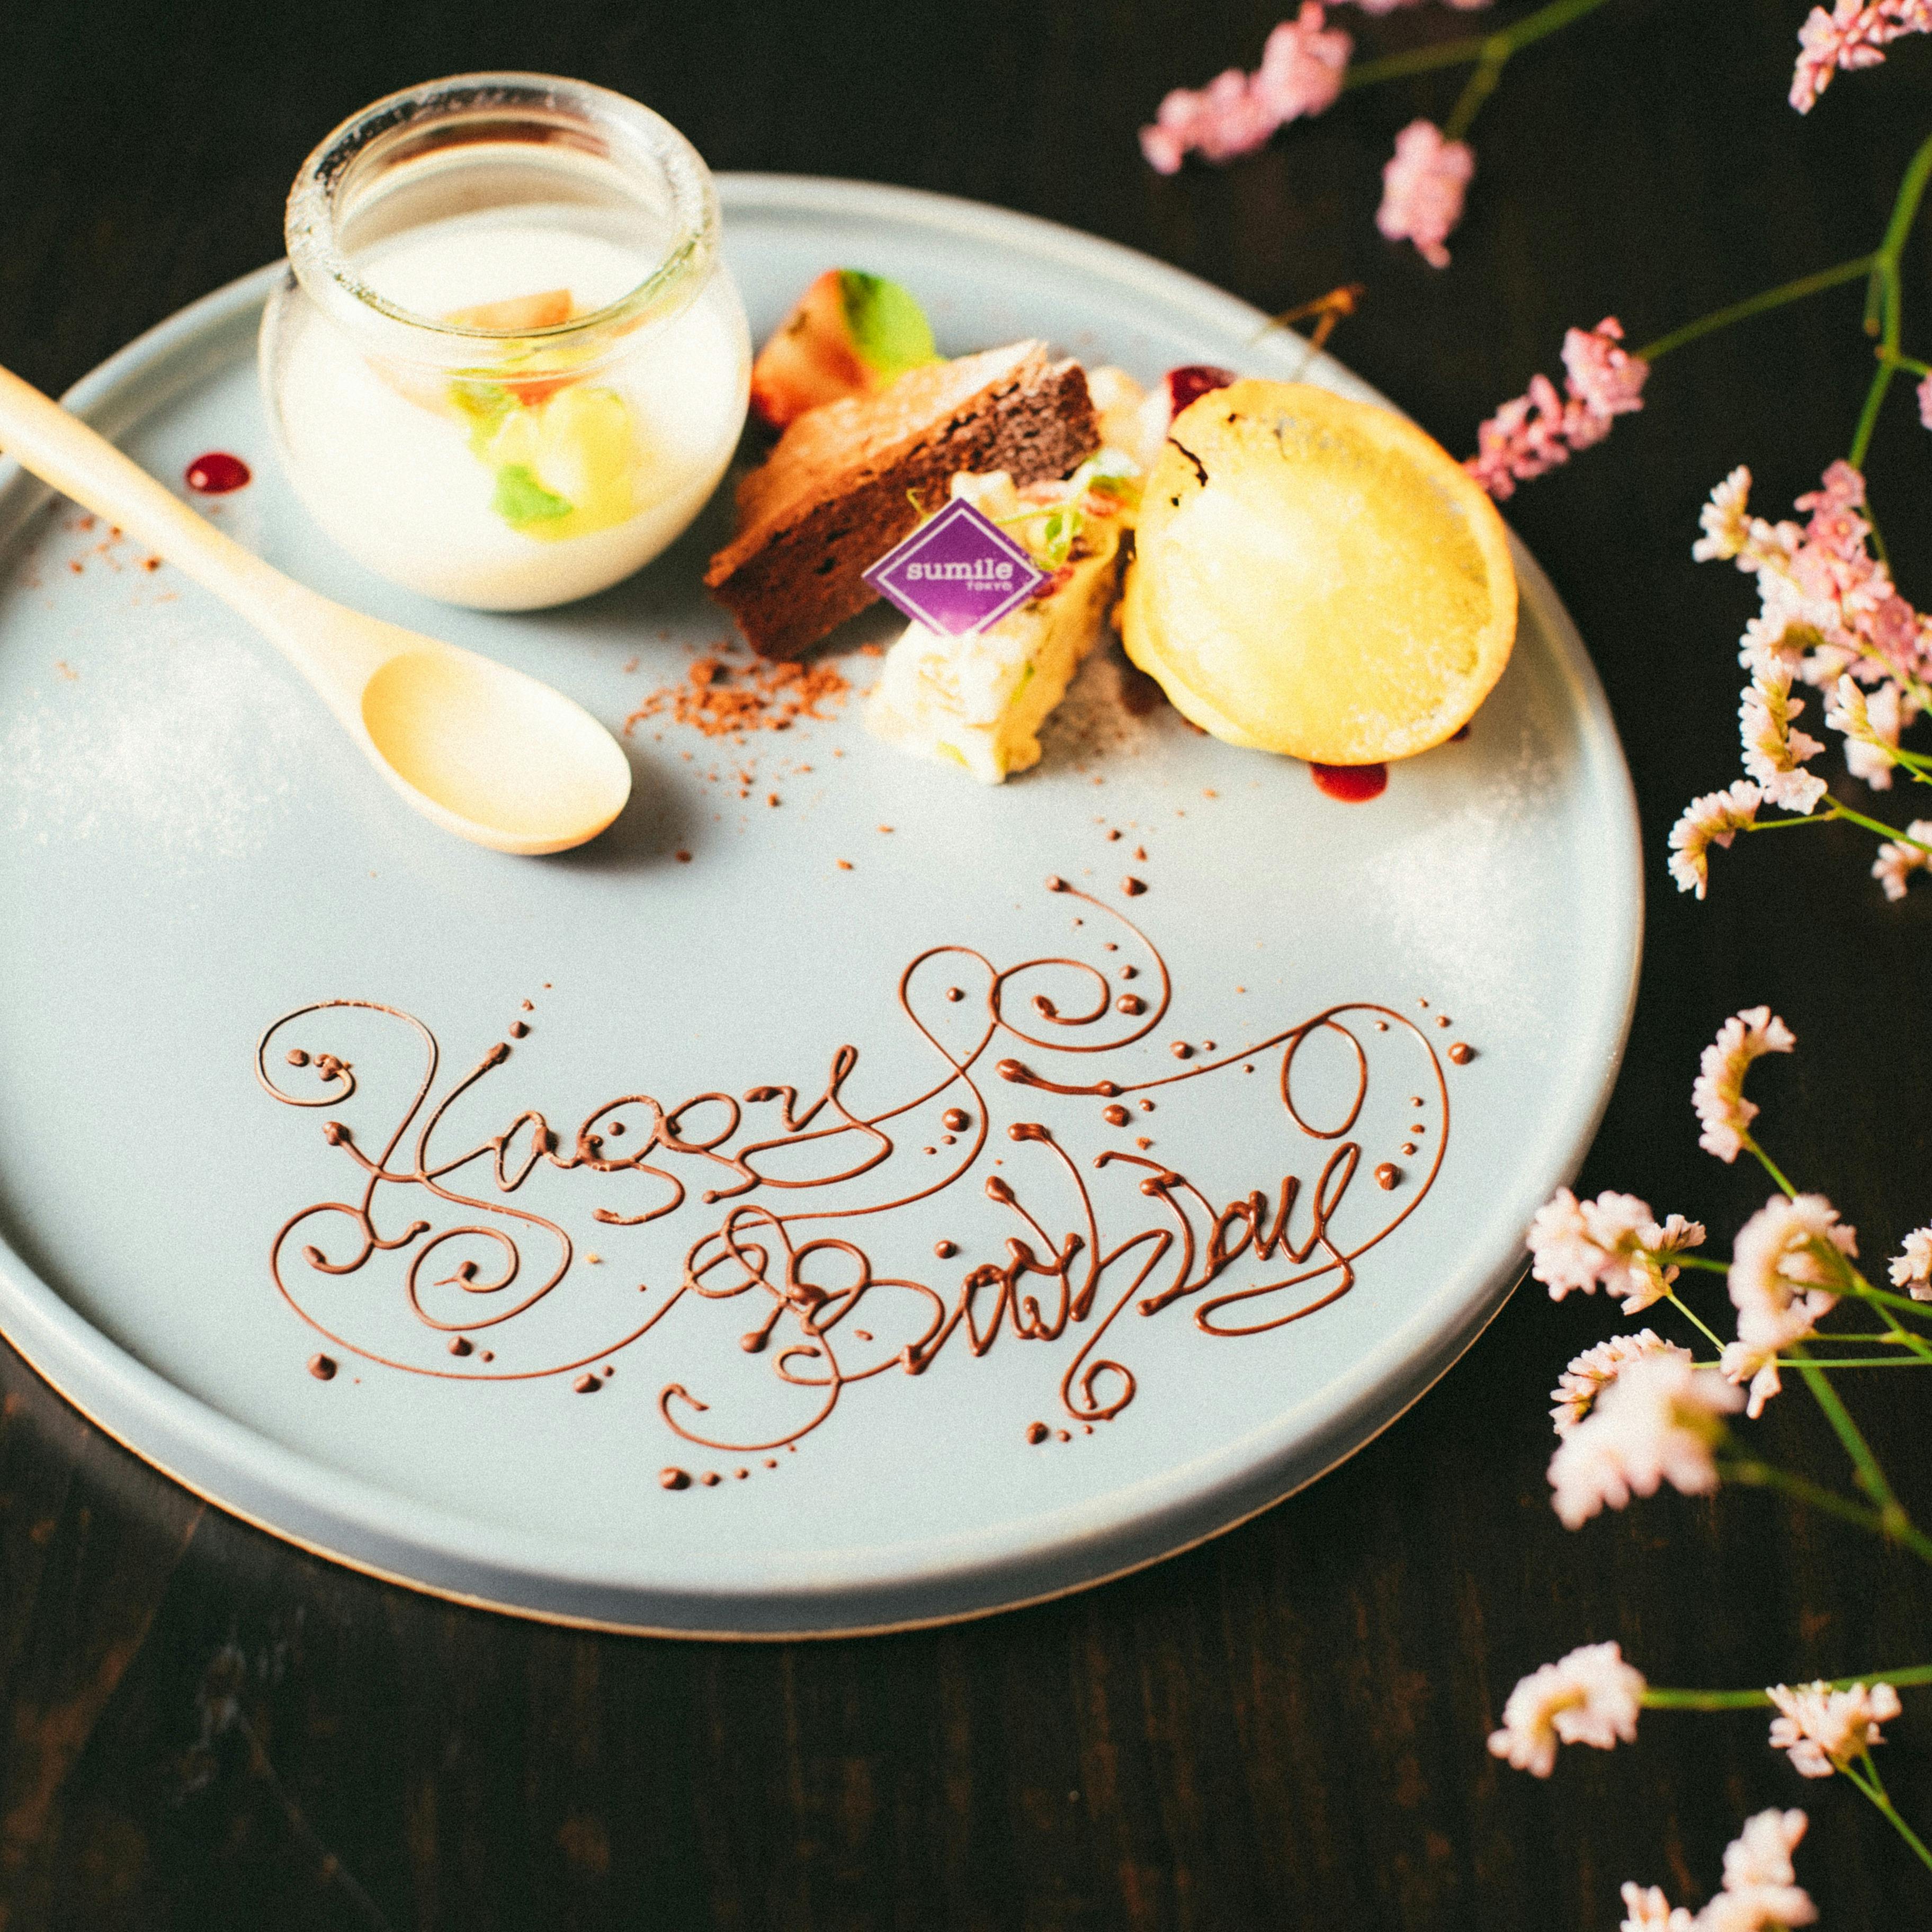 【記念日・誕生日・お祝い】デザートを盛り合わせにアップグレード!!